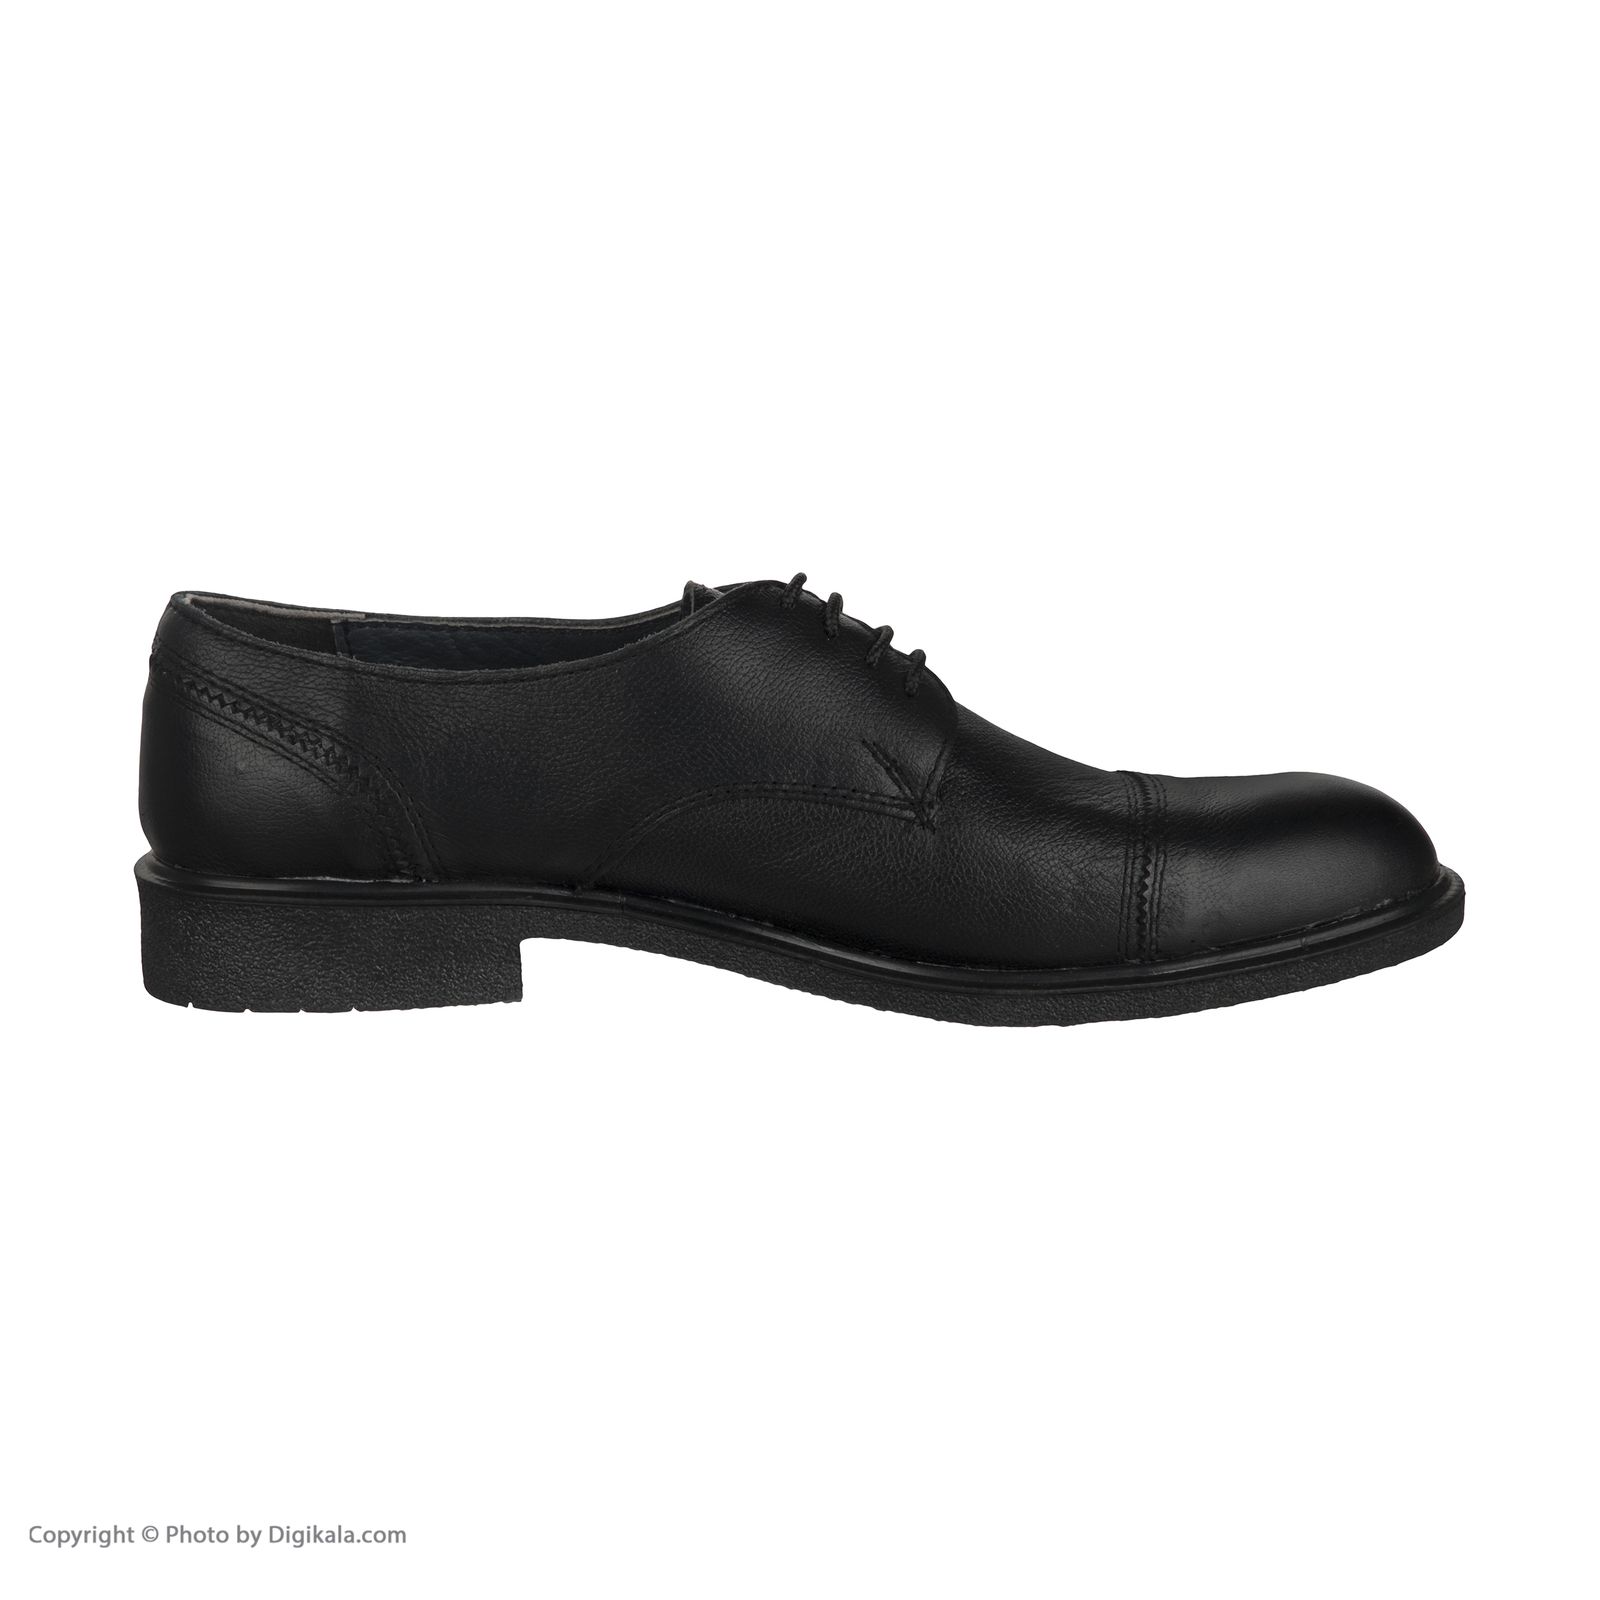  کفش مردانه سوته مدل 4870F503101 -  - 6